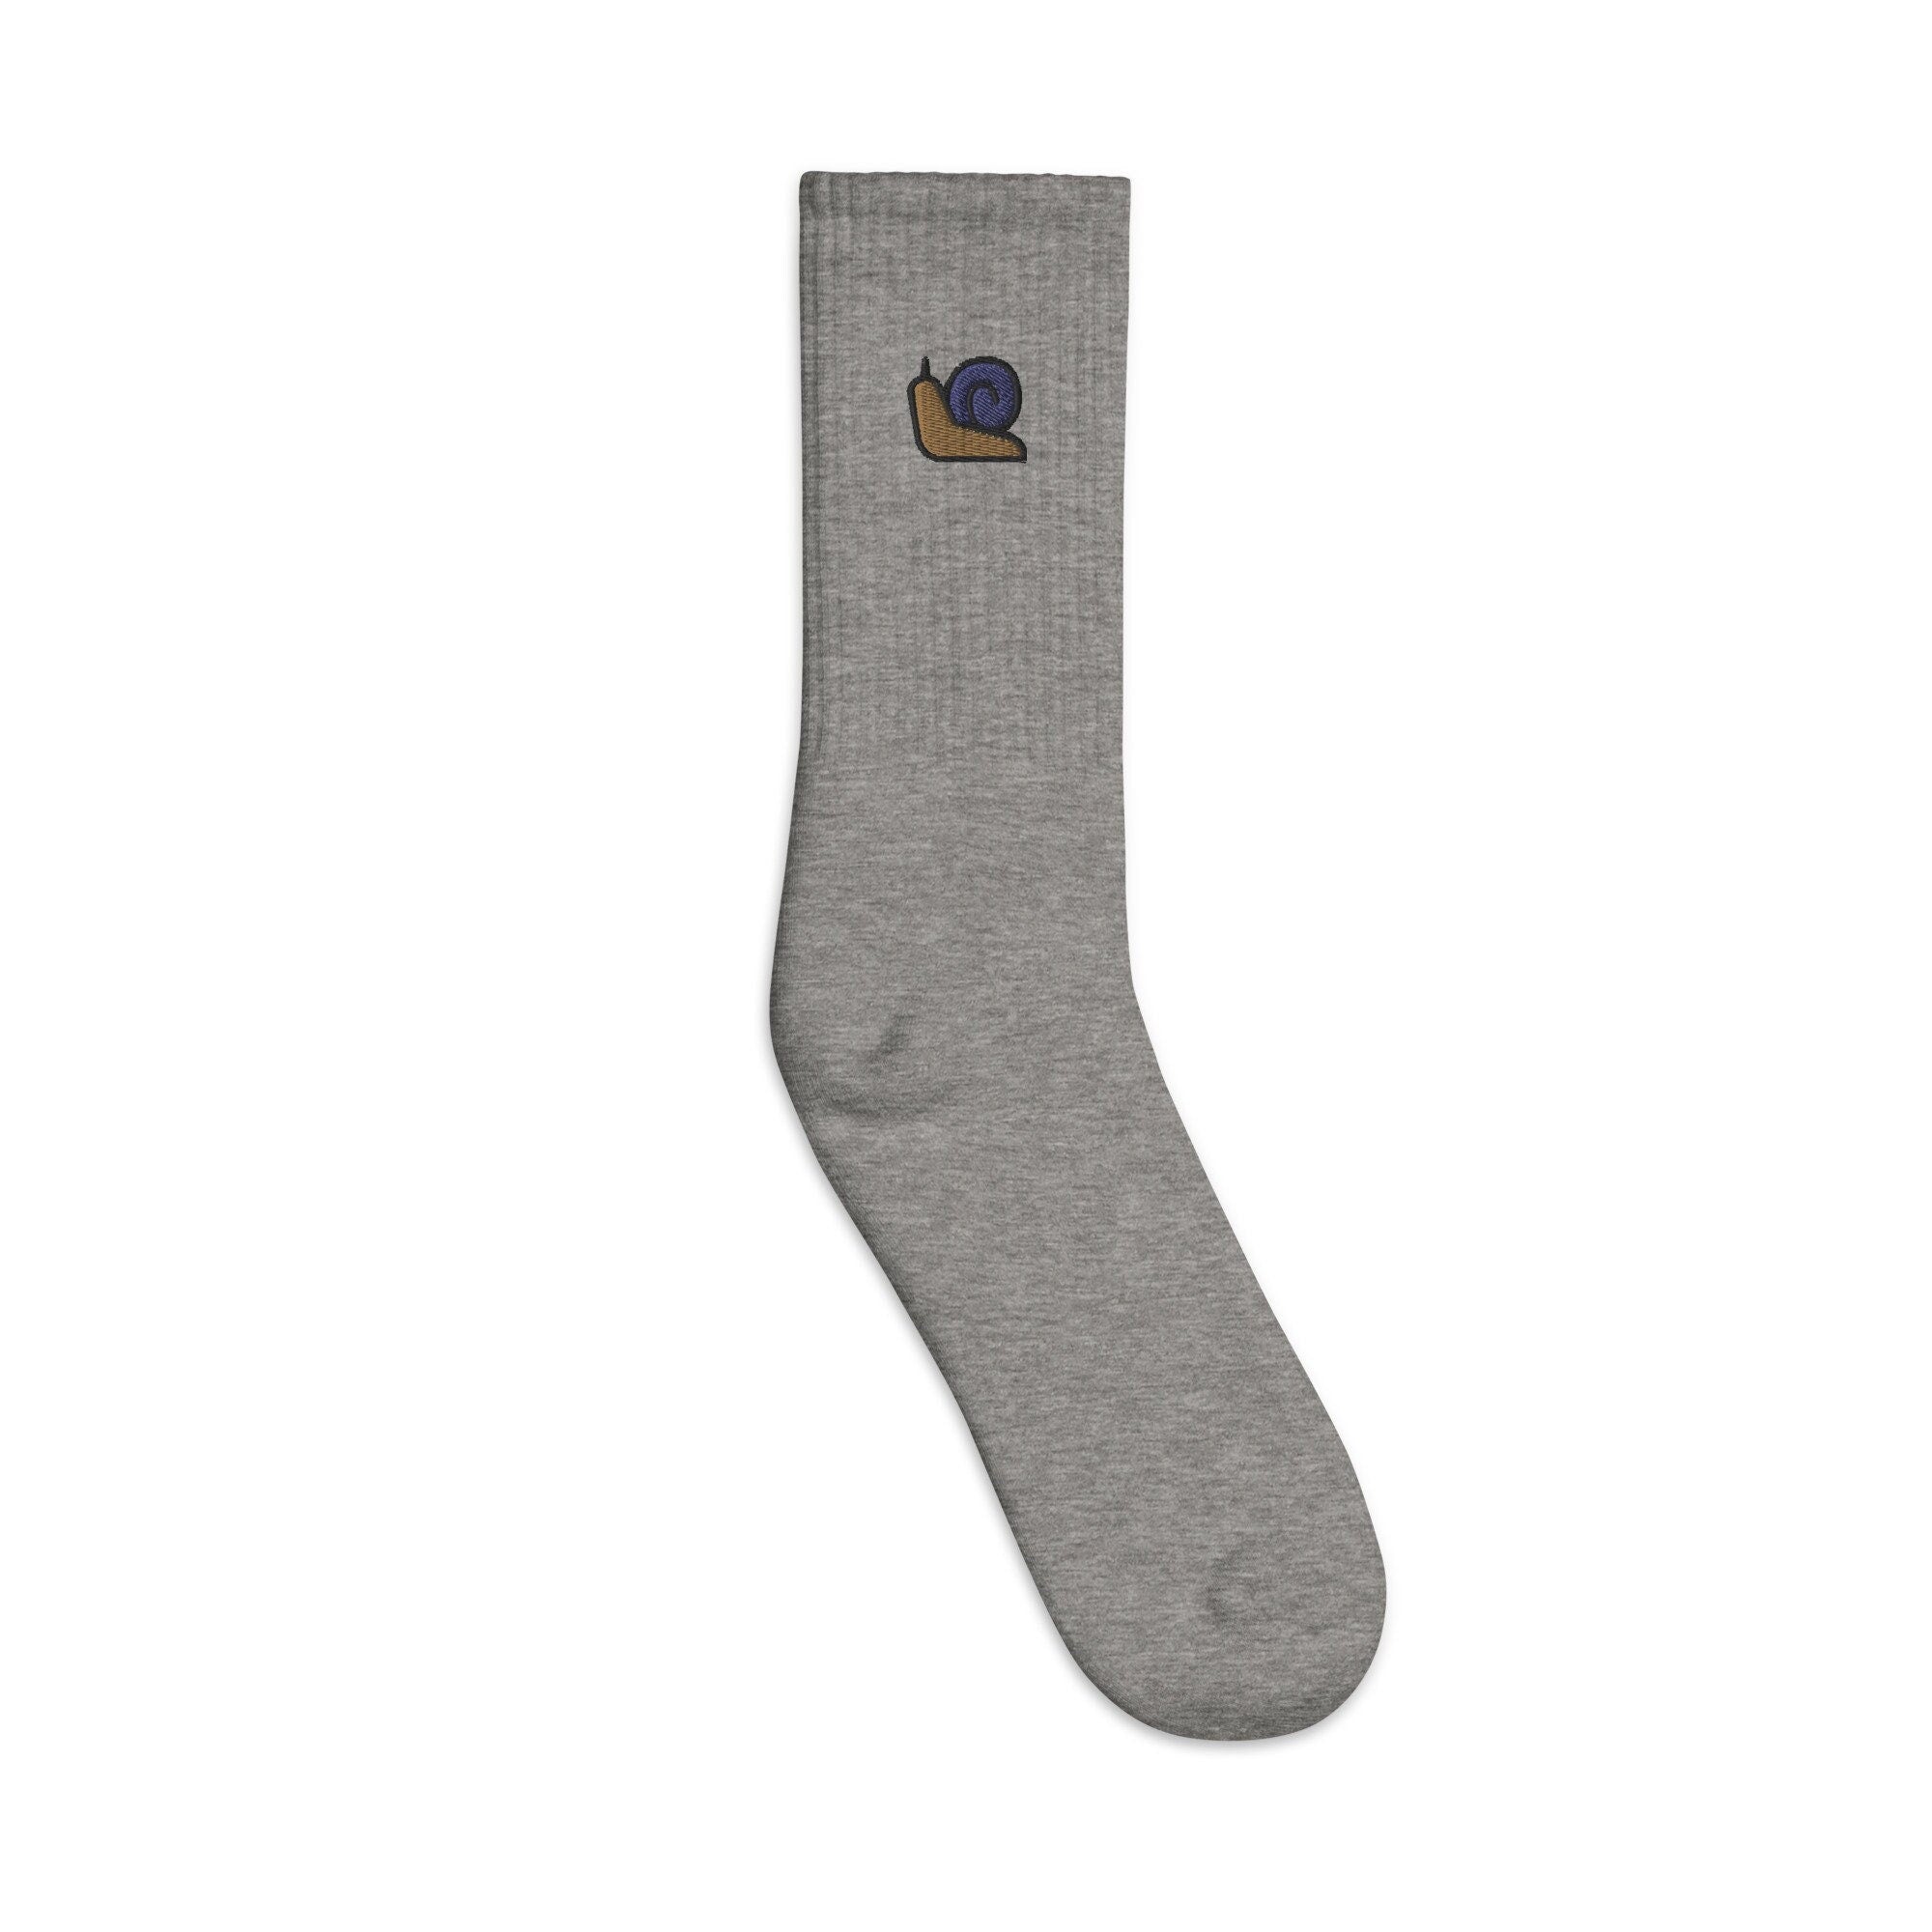 Snail Embroidered Socks, Premium Embroidered Socks, Long Socks Gift - Multiple Colors